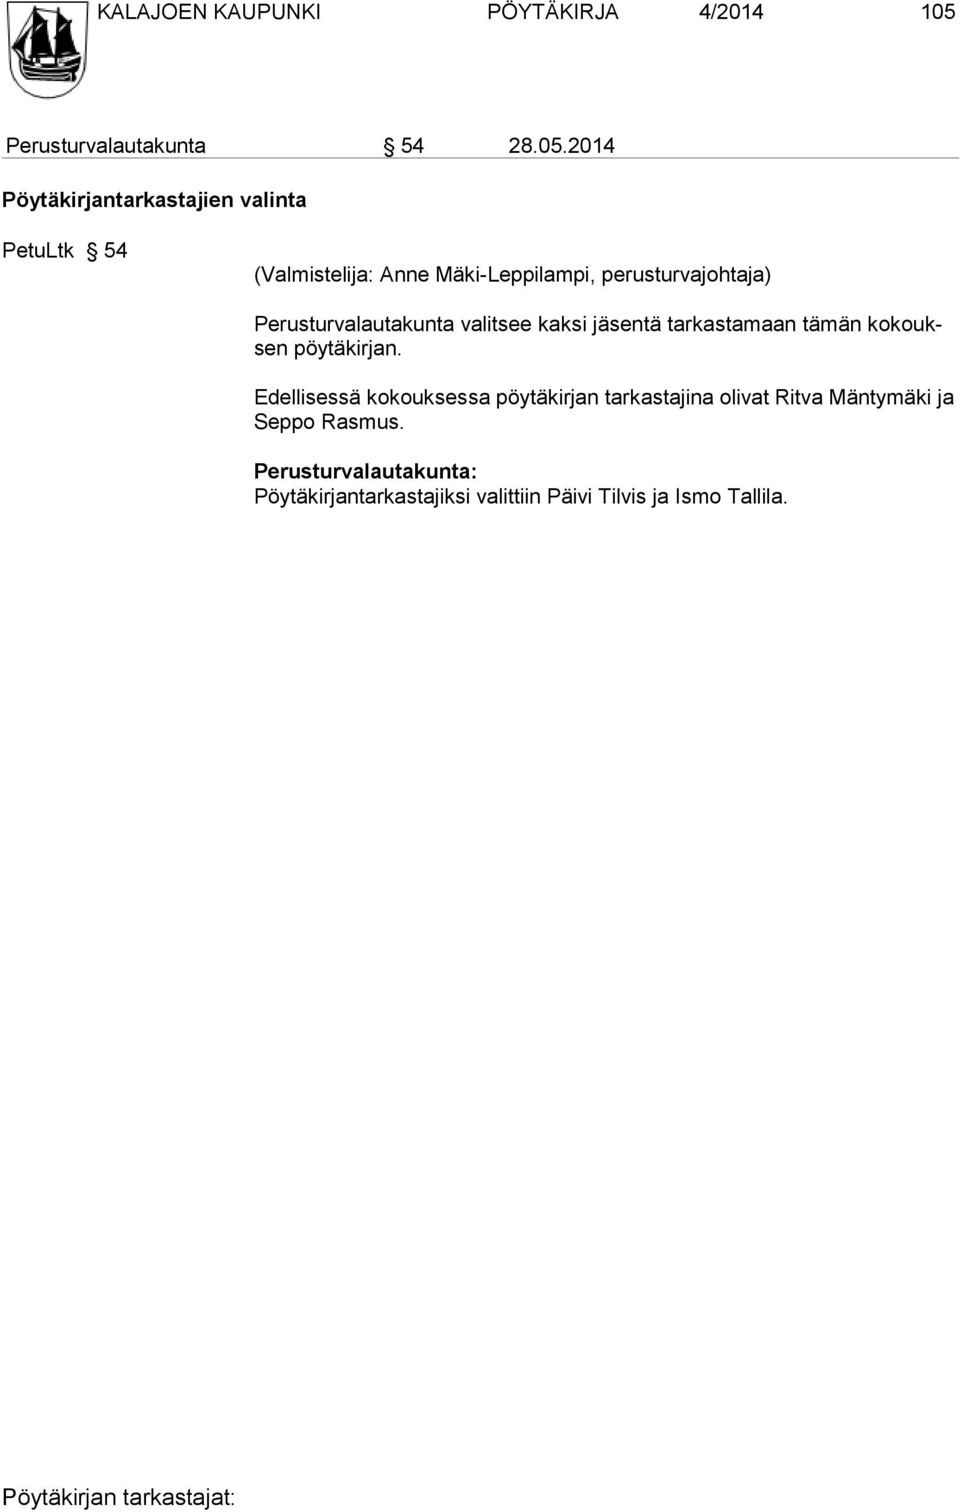 2014 Pöytäkirjantarkastajien valinta PetuLtk 54 (Valmistelija: Anne Mäki-Leppilampi, perusturvajohtaja)